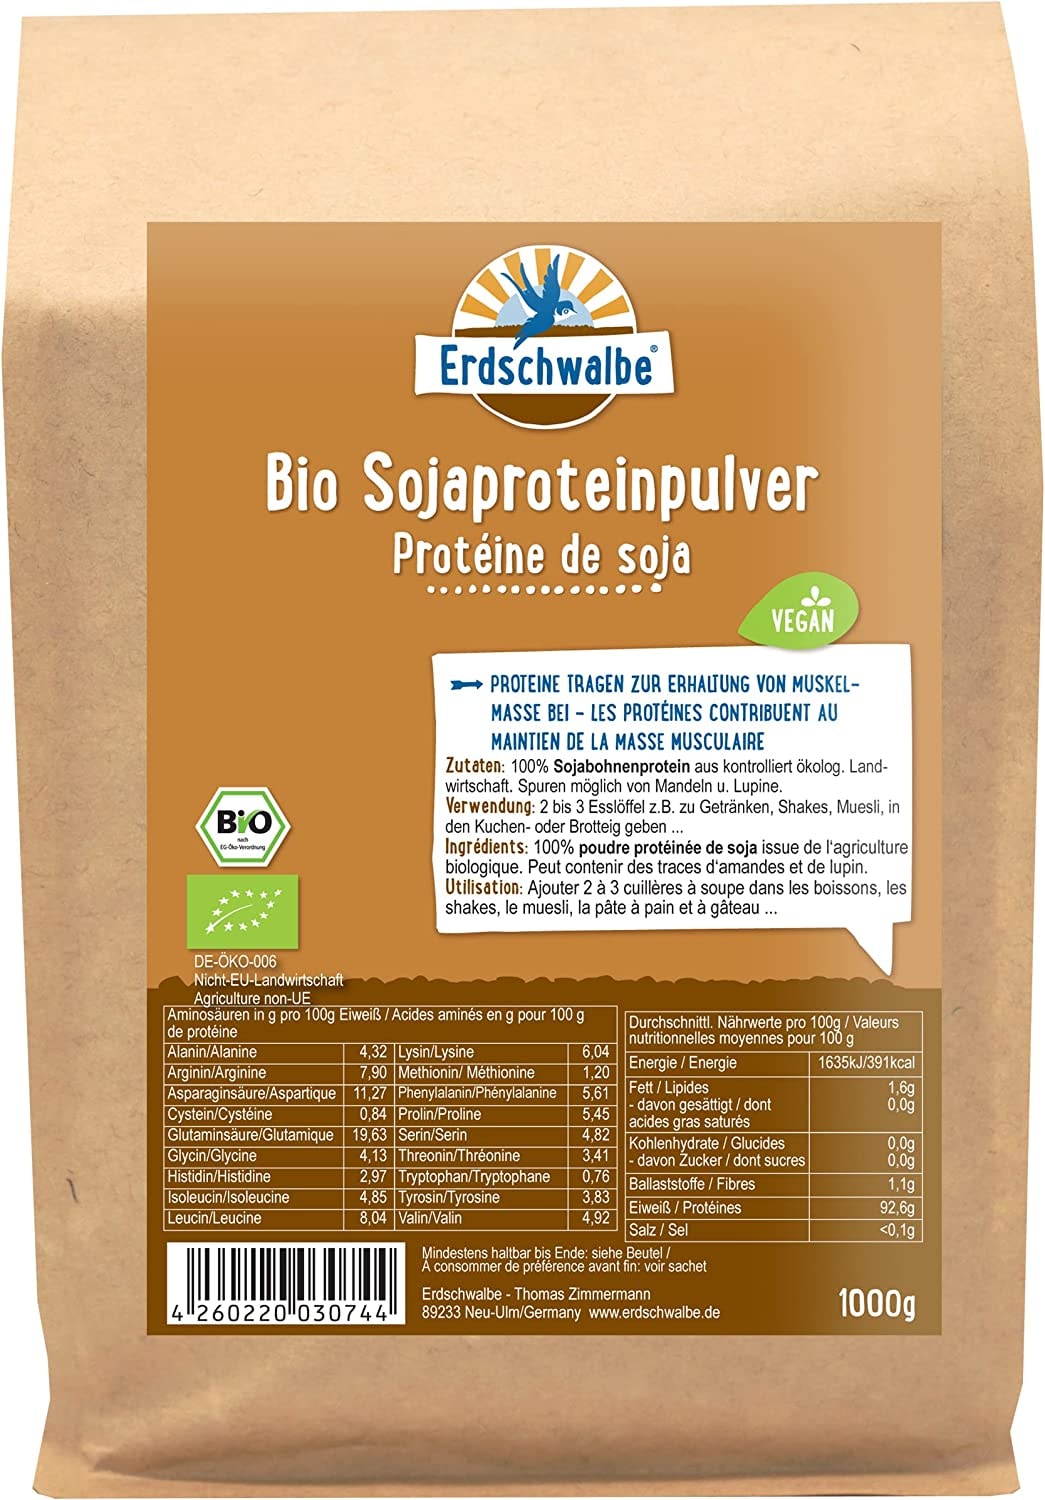 Erdschwalbe Bio Sojaprotein - GMO-freies Protein - Veganes Eiweißpulver - 1 Kg